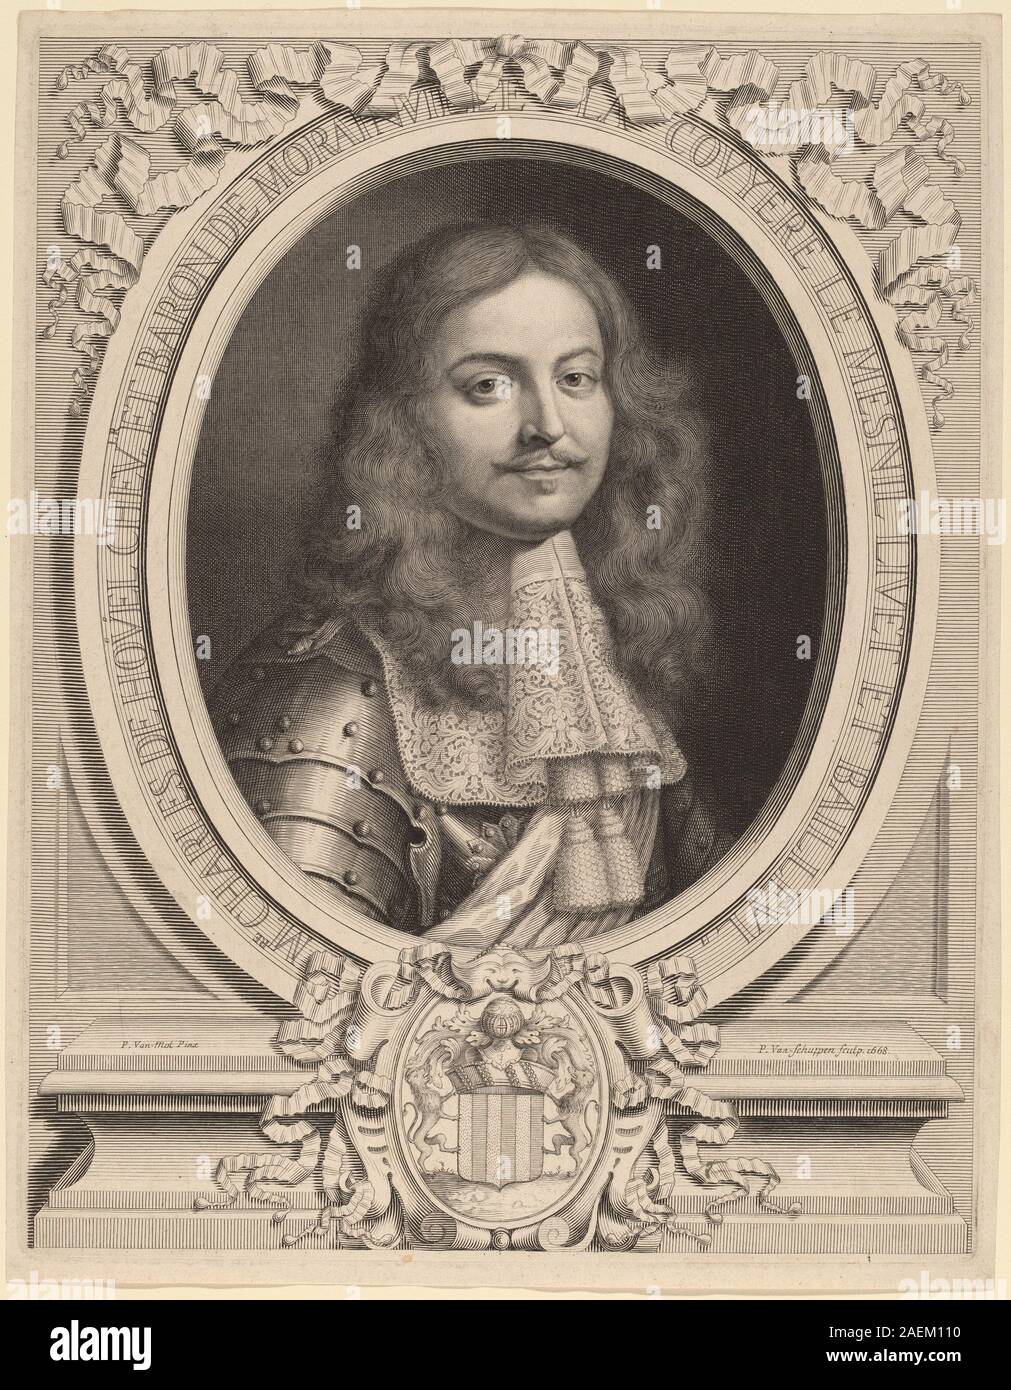 Peter Ludwig van Schuppen after Pieter van Mol, Charles de Houel de Morainville, 1668 Charles de Houel de Morainville; 1668date Stock Photo